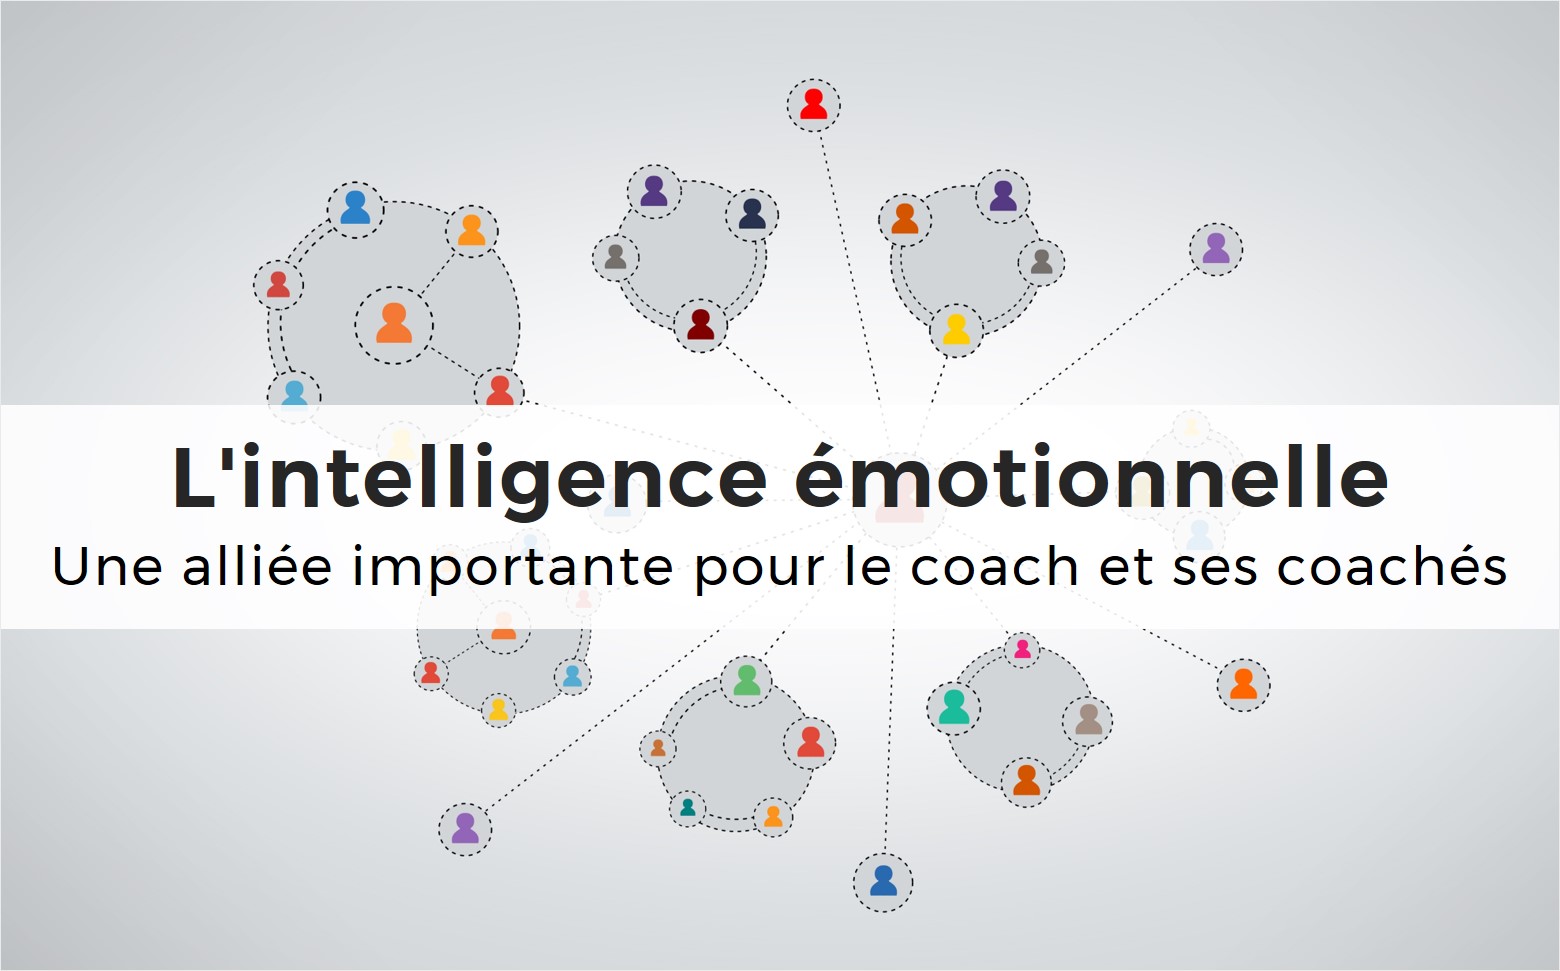 L'intelligence émotionnelle : une alliée importante pour le coach et ses coachés